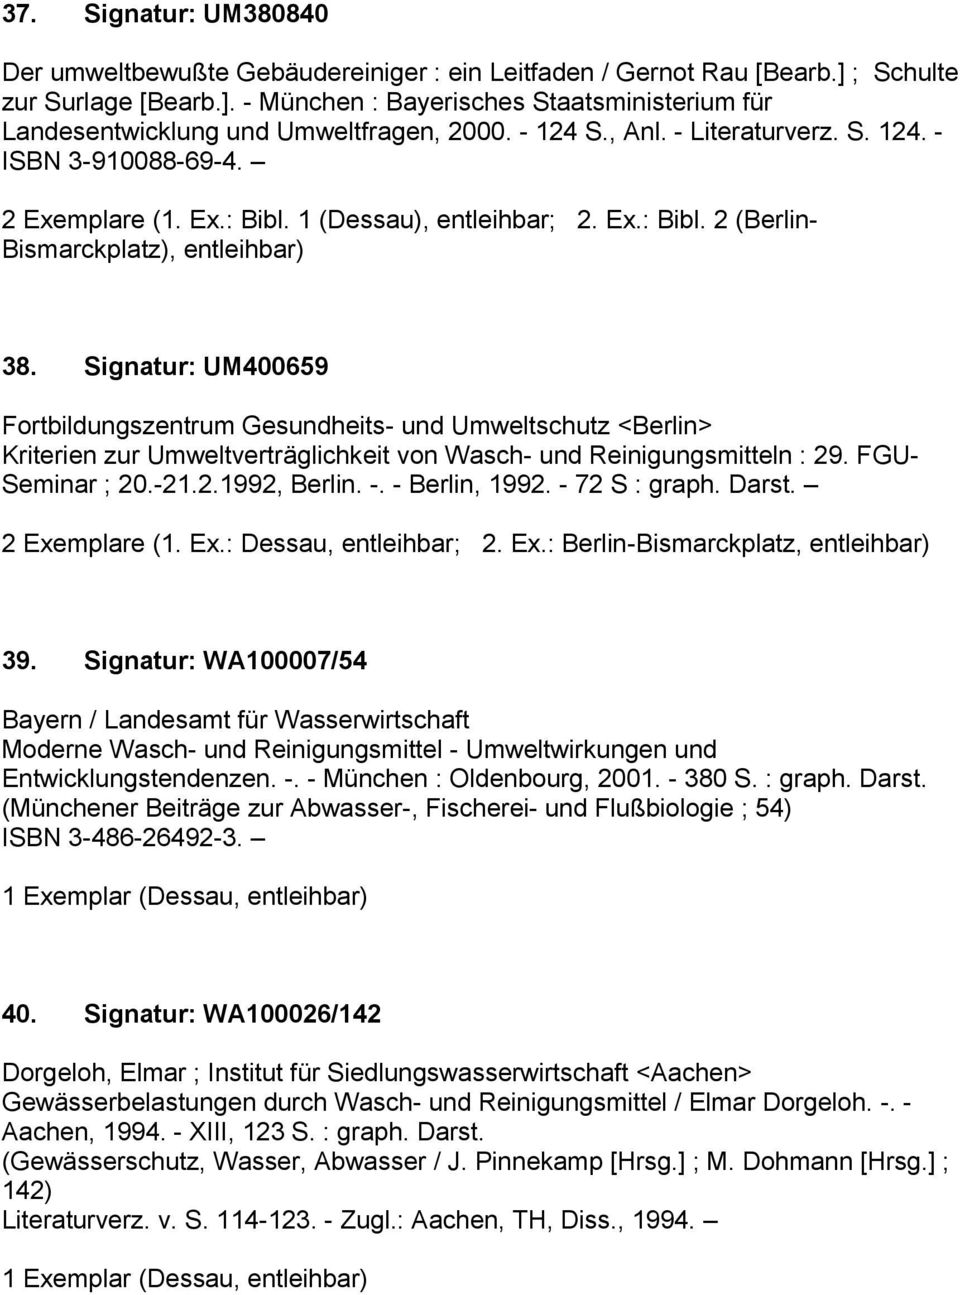 Signatur: UM400659 Fortbildungszentrum Gesundheits- und Umweltschutz <Berlin> Kriterien zur Umweltverträglichkeit von Wasch- und Reinigungsmitteln : 29. FGU- Seminar ; 20.-21.2.1992, Berlin. -.